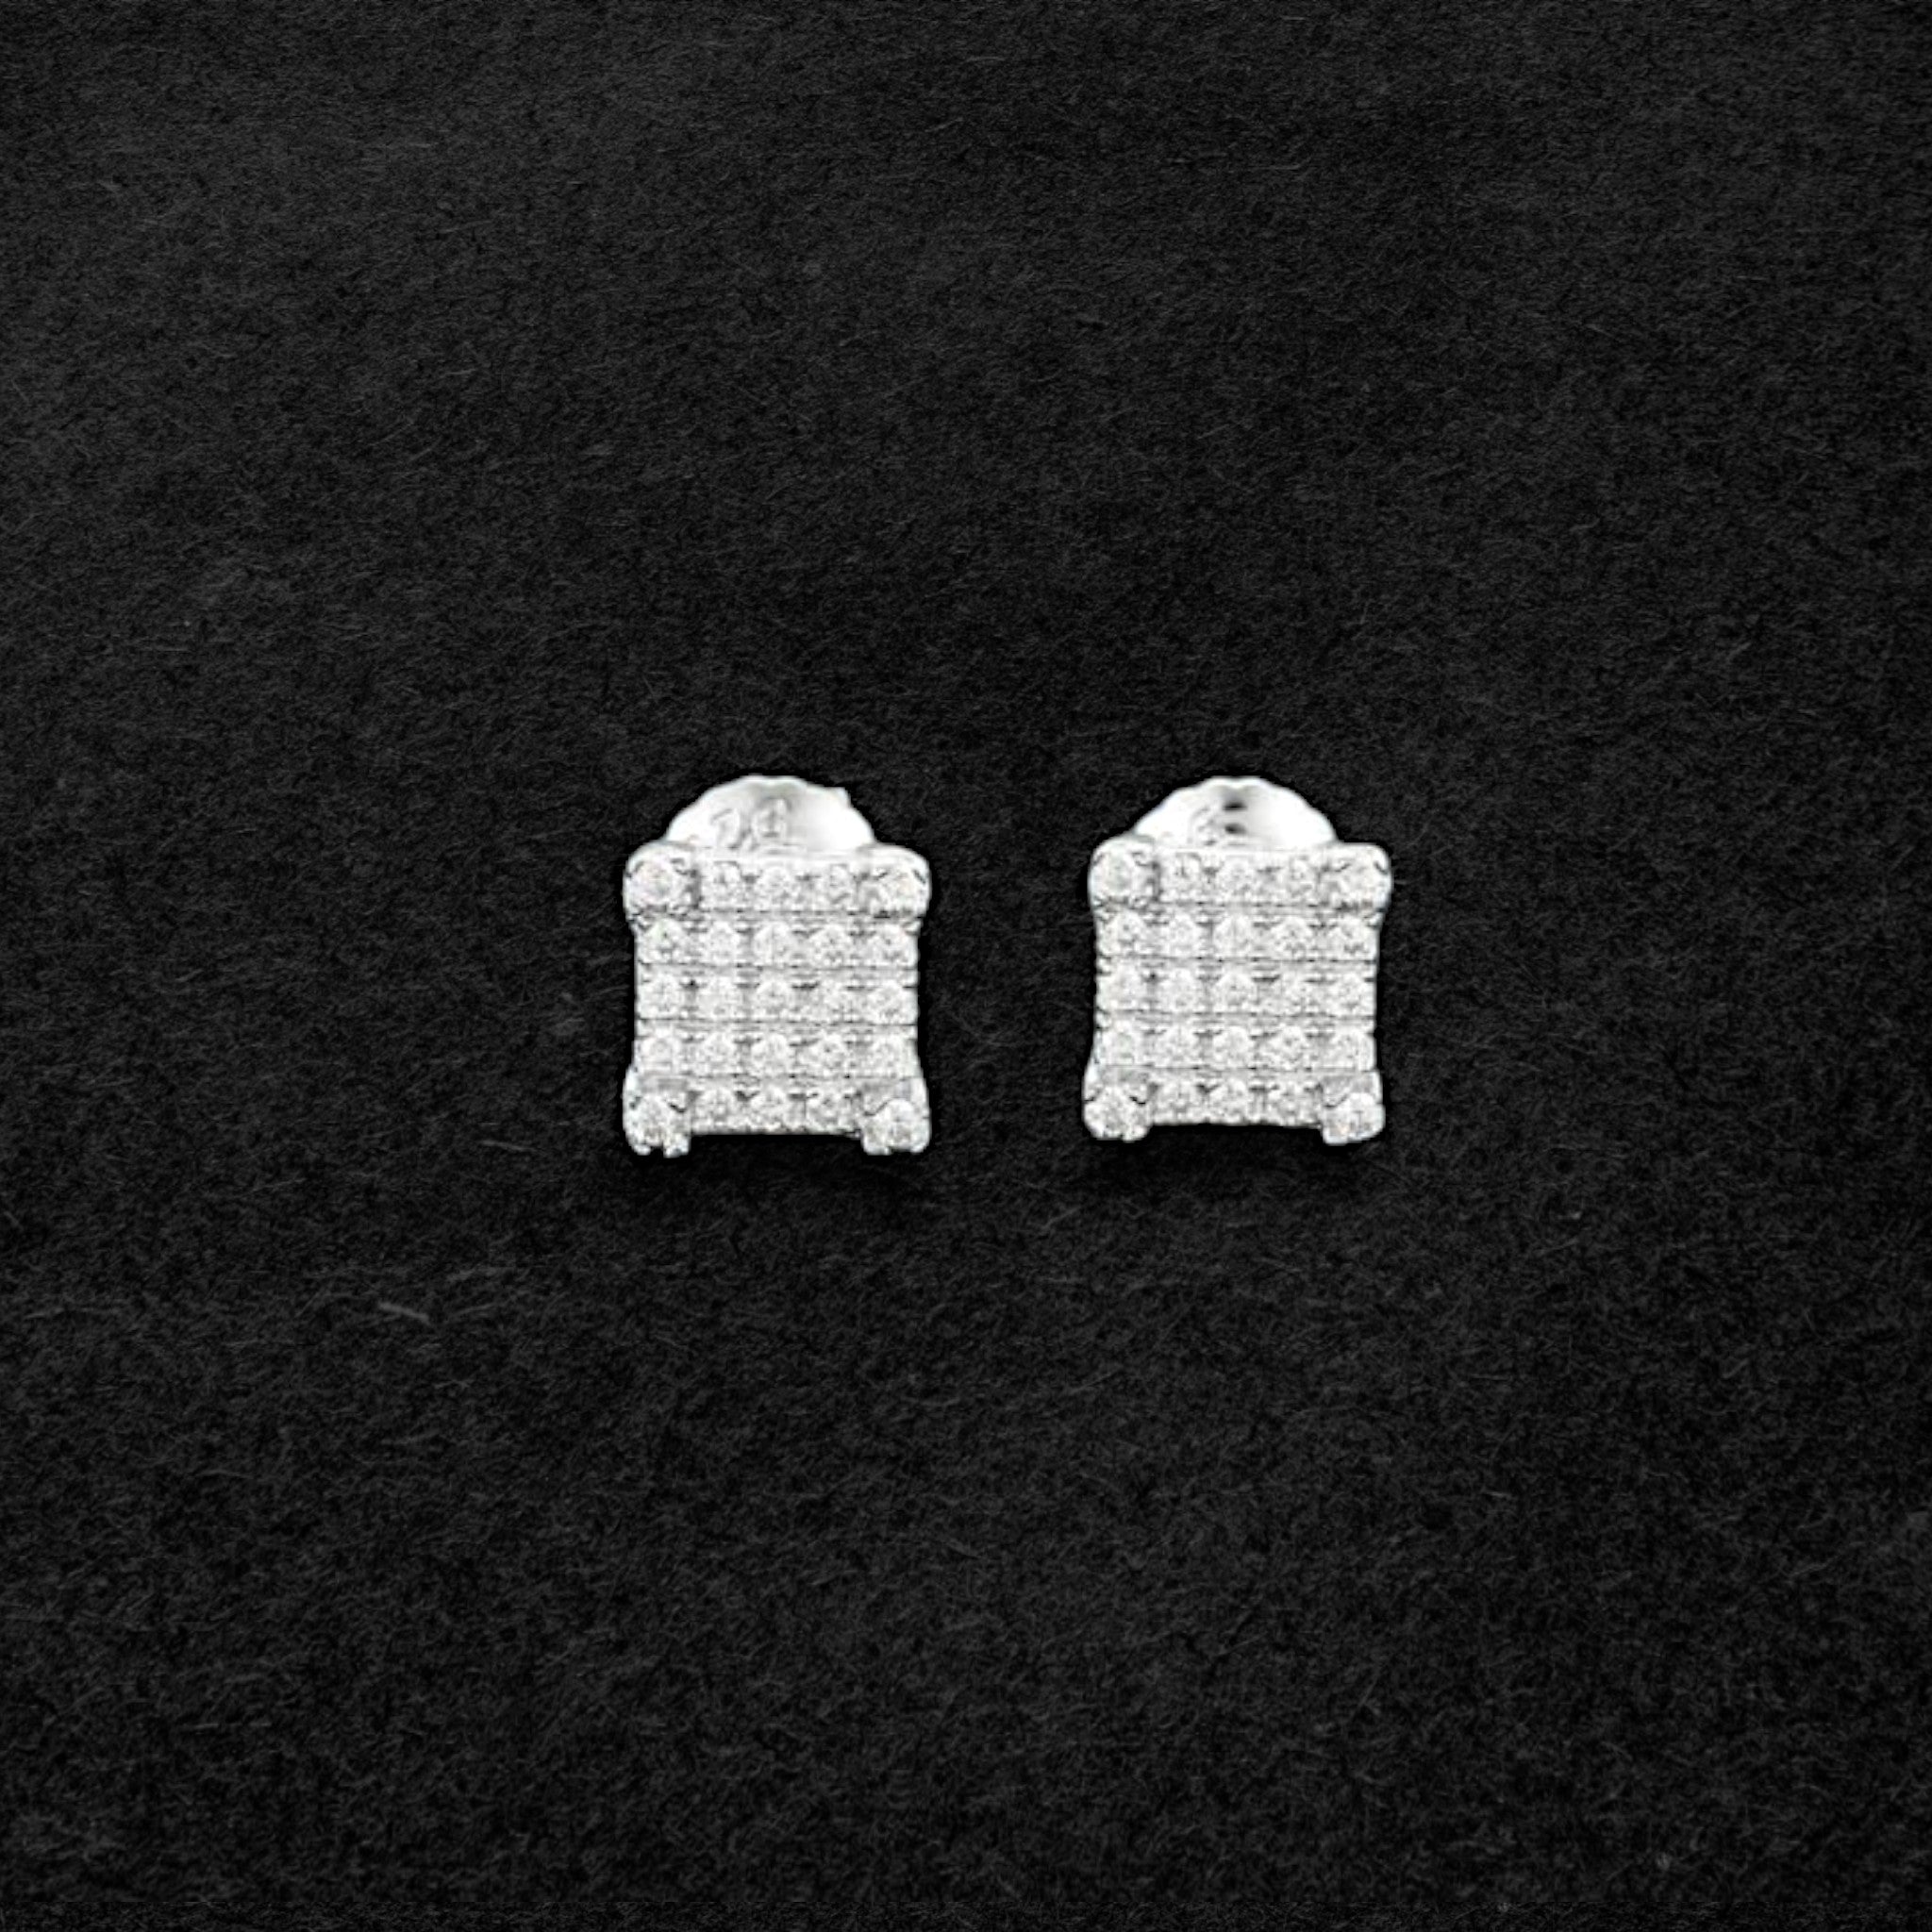 Stunning Moissanite Square Cluster Earrings